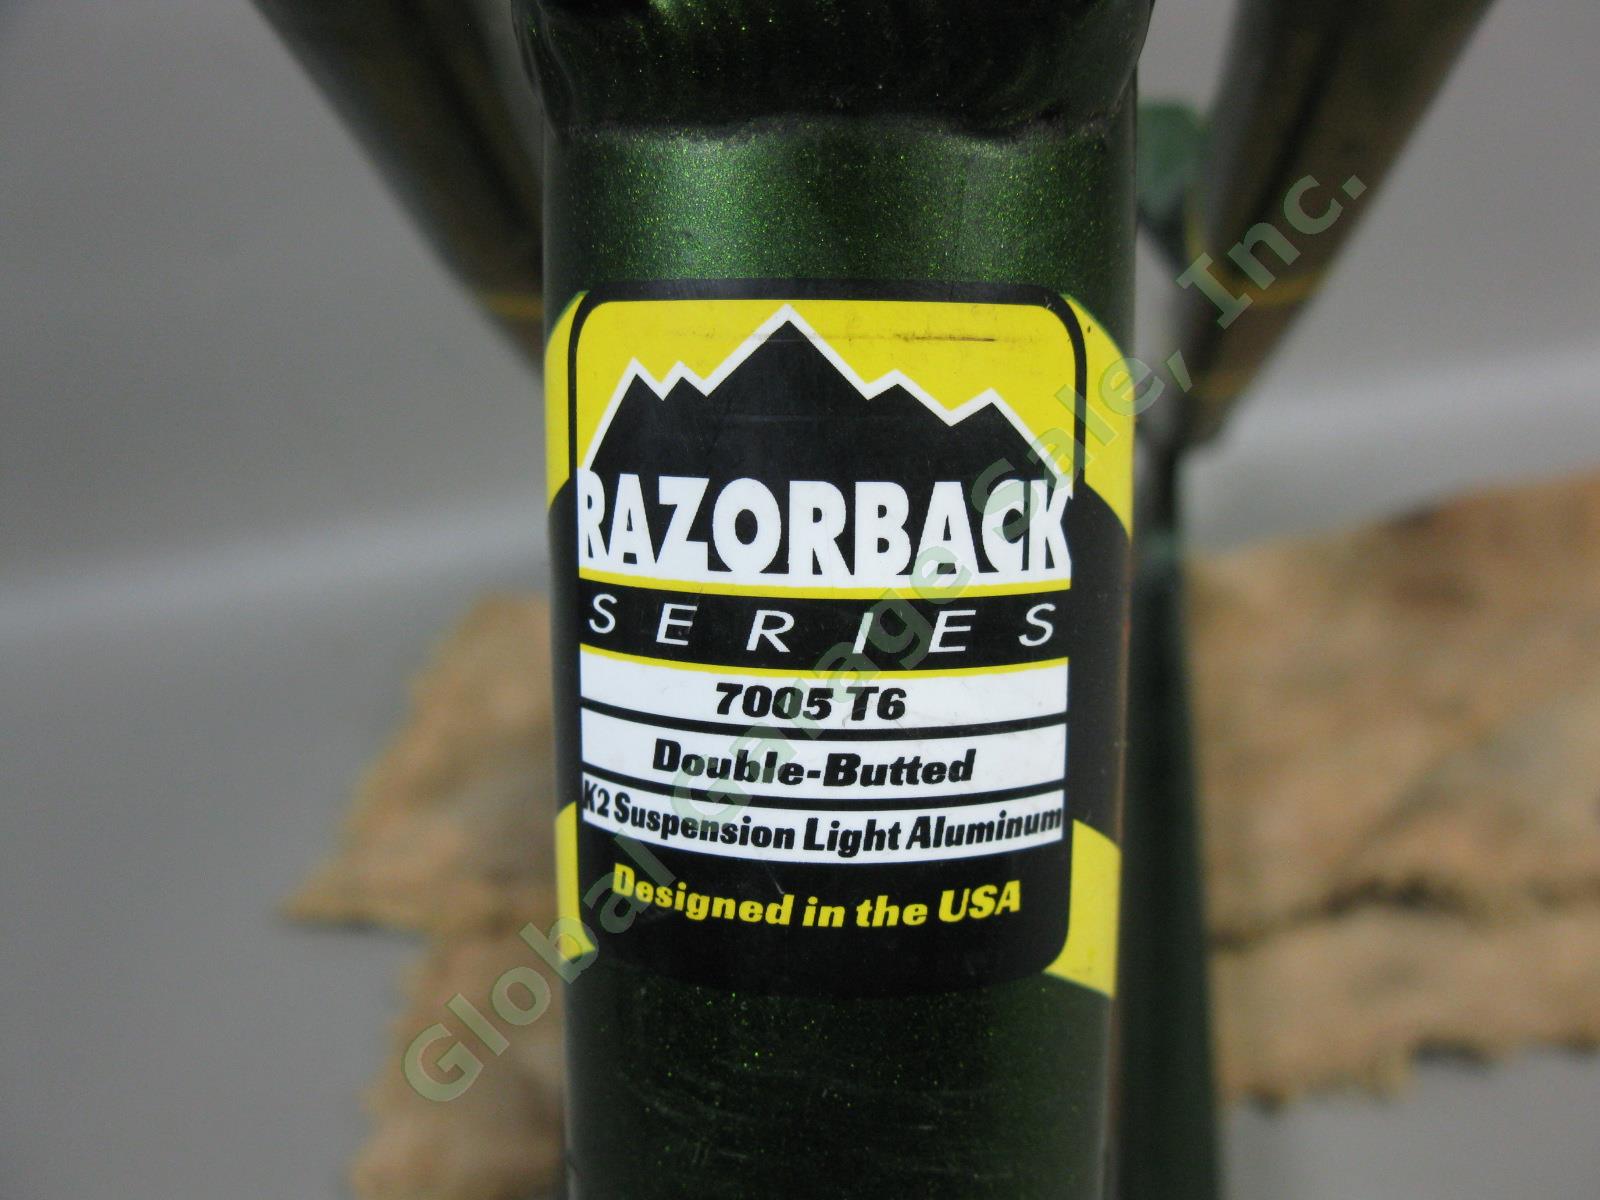 K2 Razorback 4.0 7005 T6 Full Suspension Light Aluminum MTB Mountain Bike Frame 6